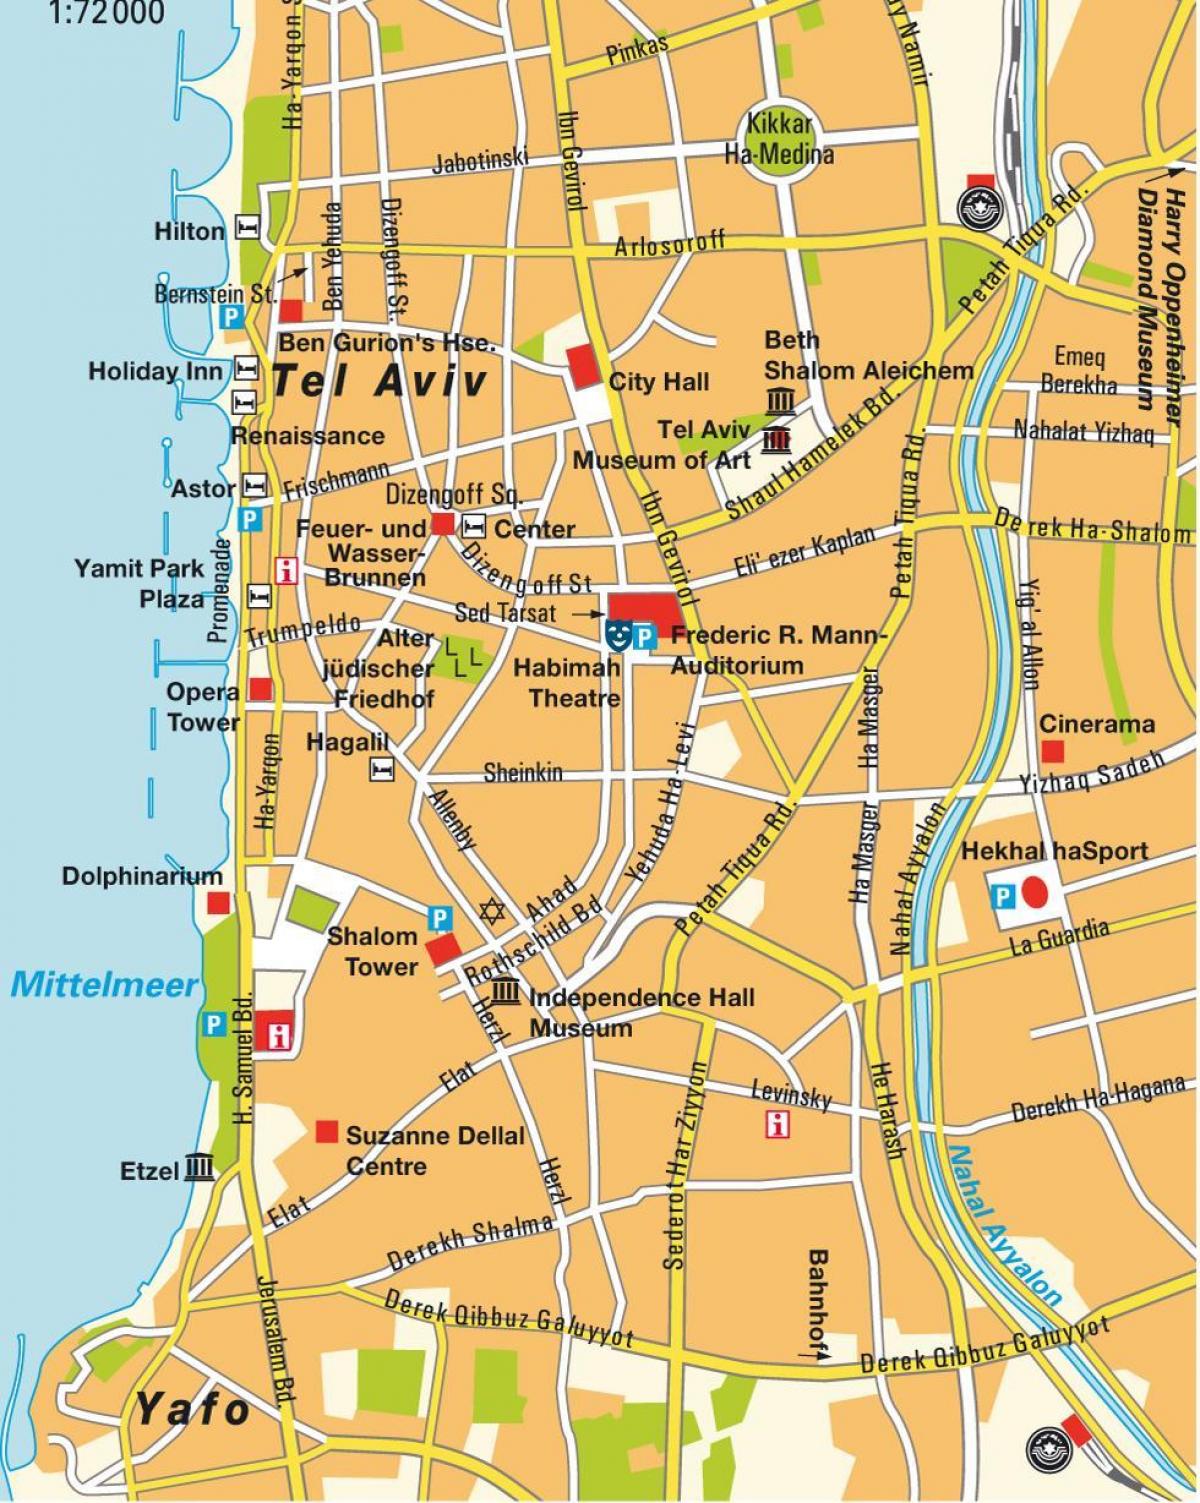 térkép Tel Aviv területén